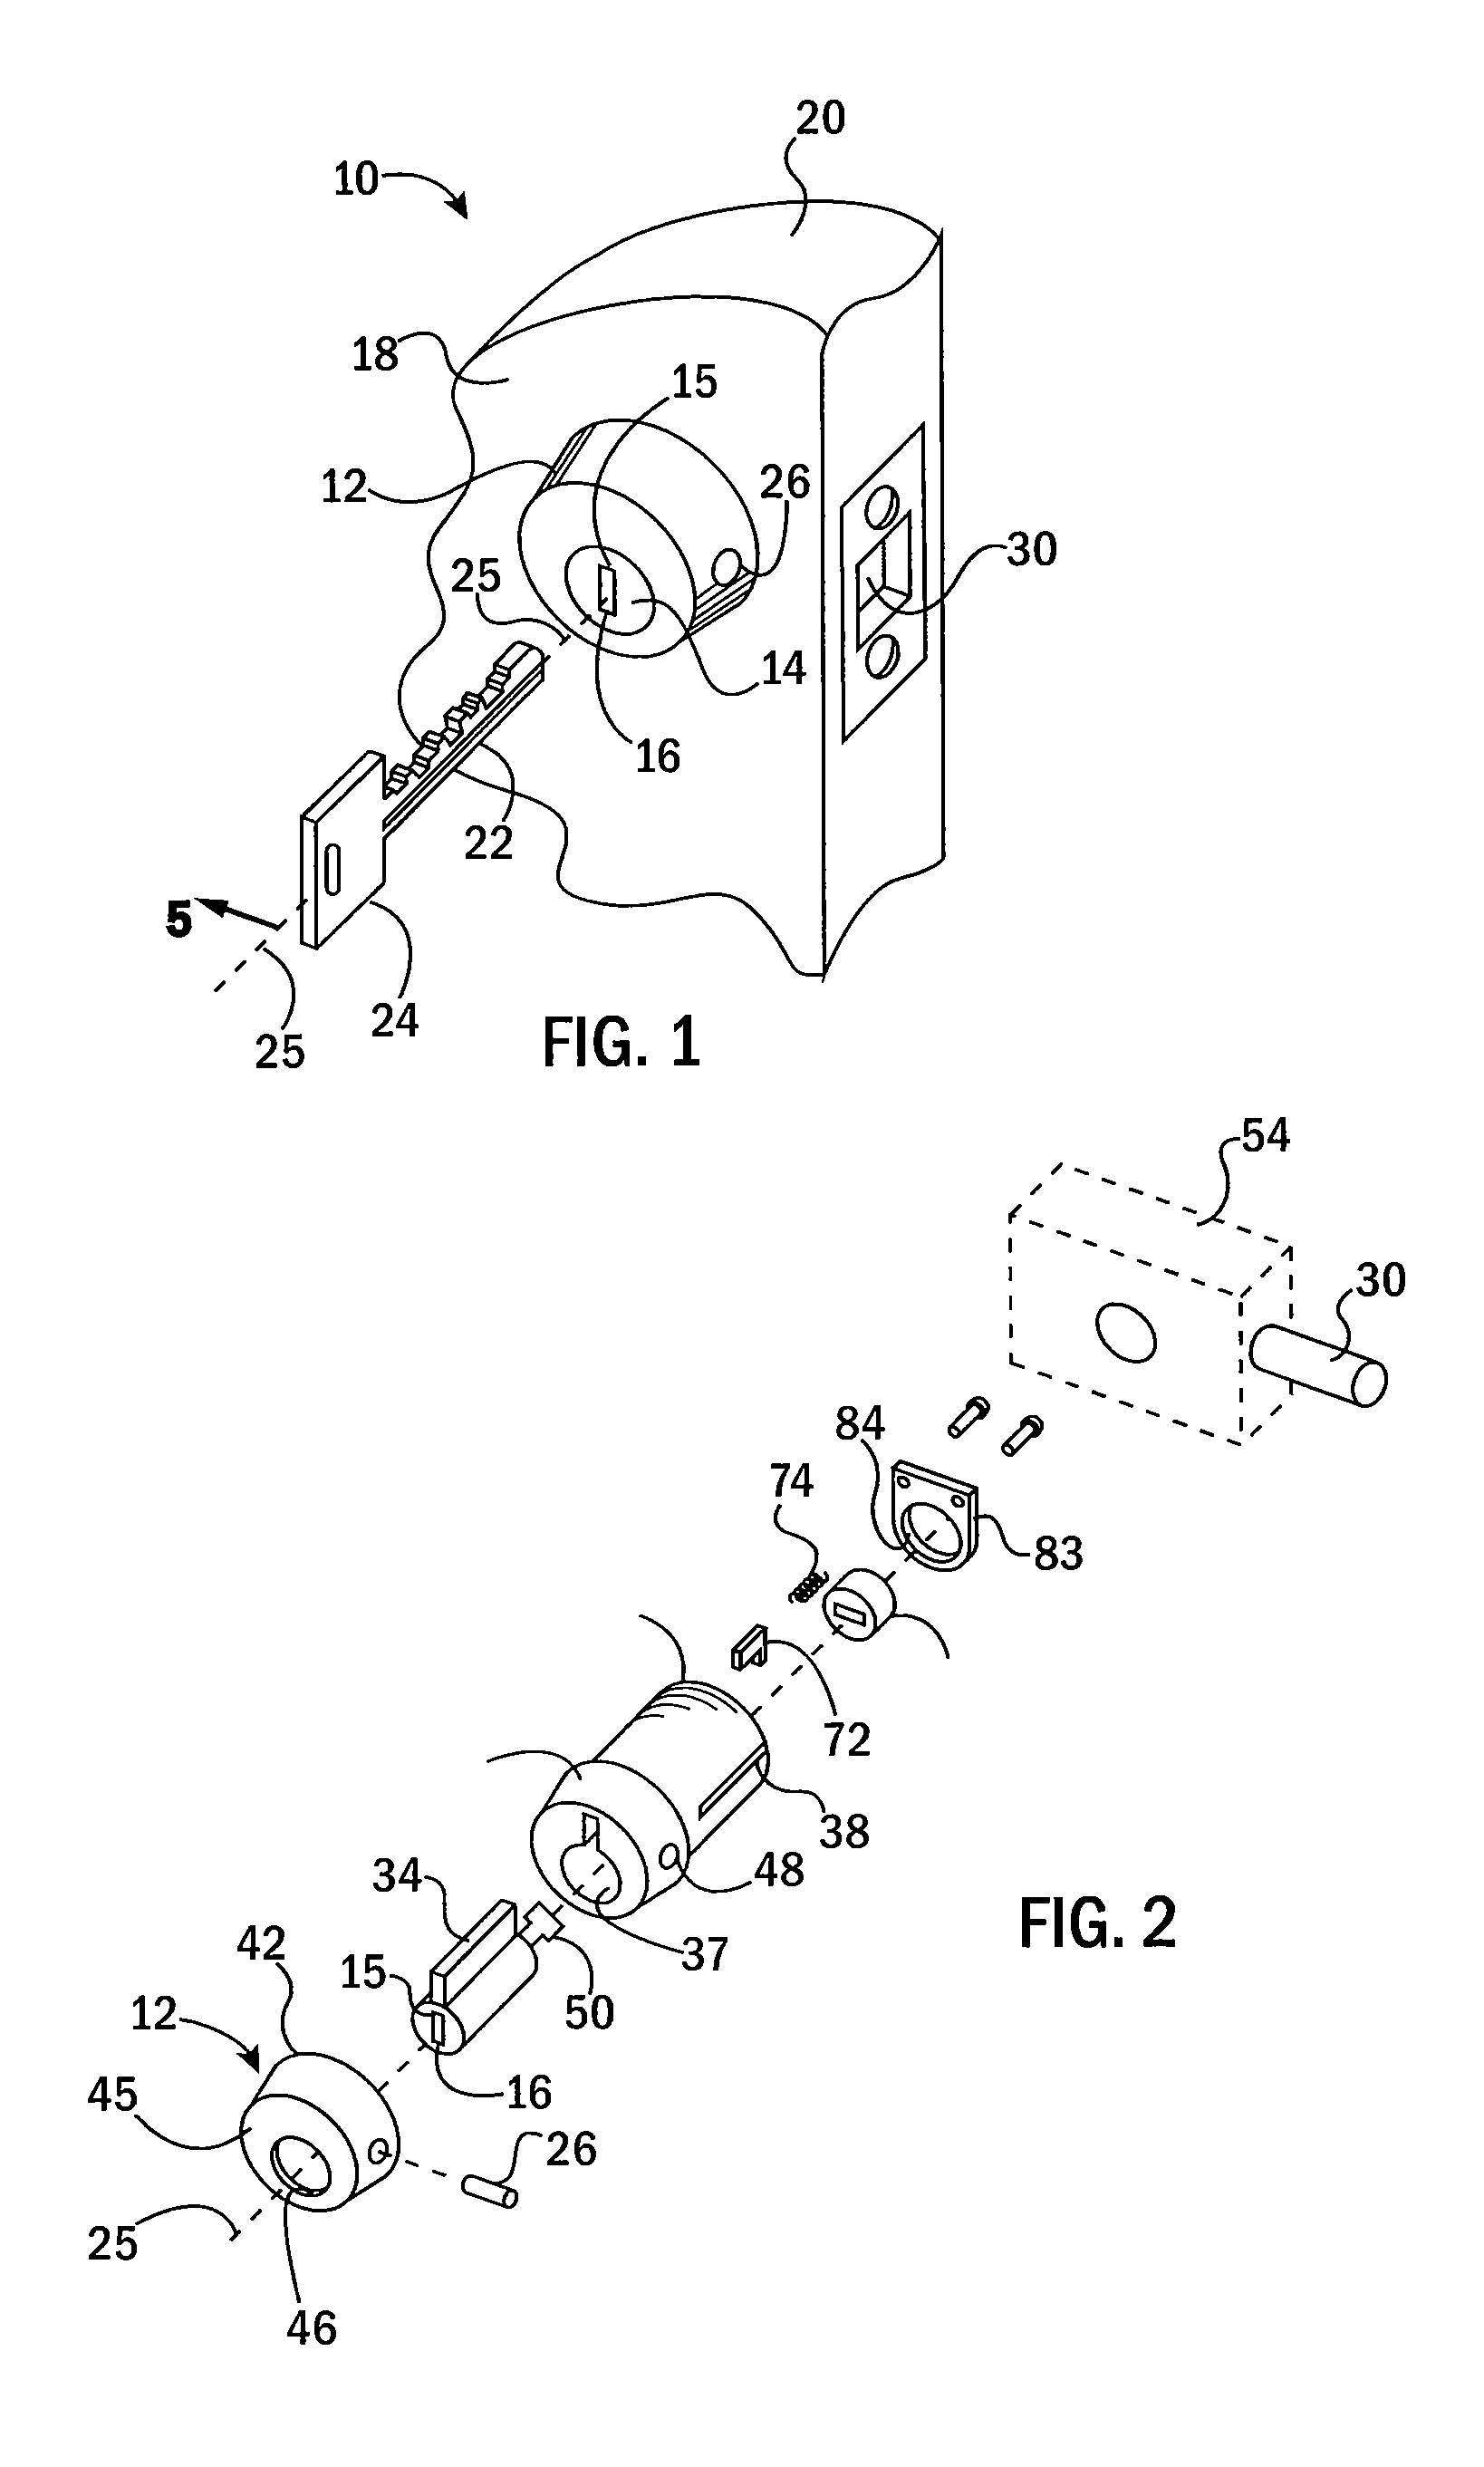 Single key, interchangeable cylinder lock